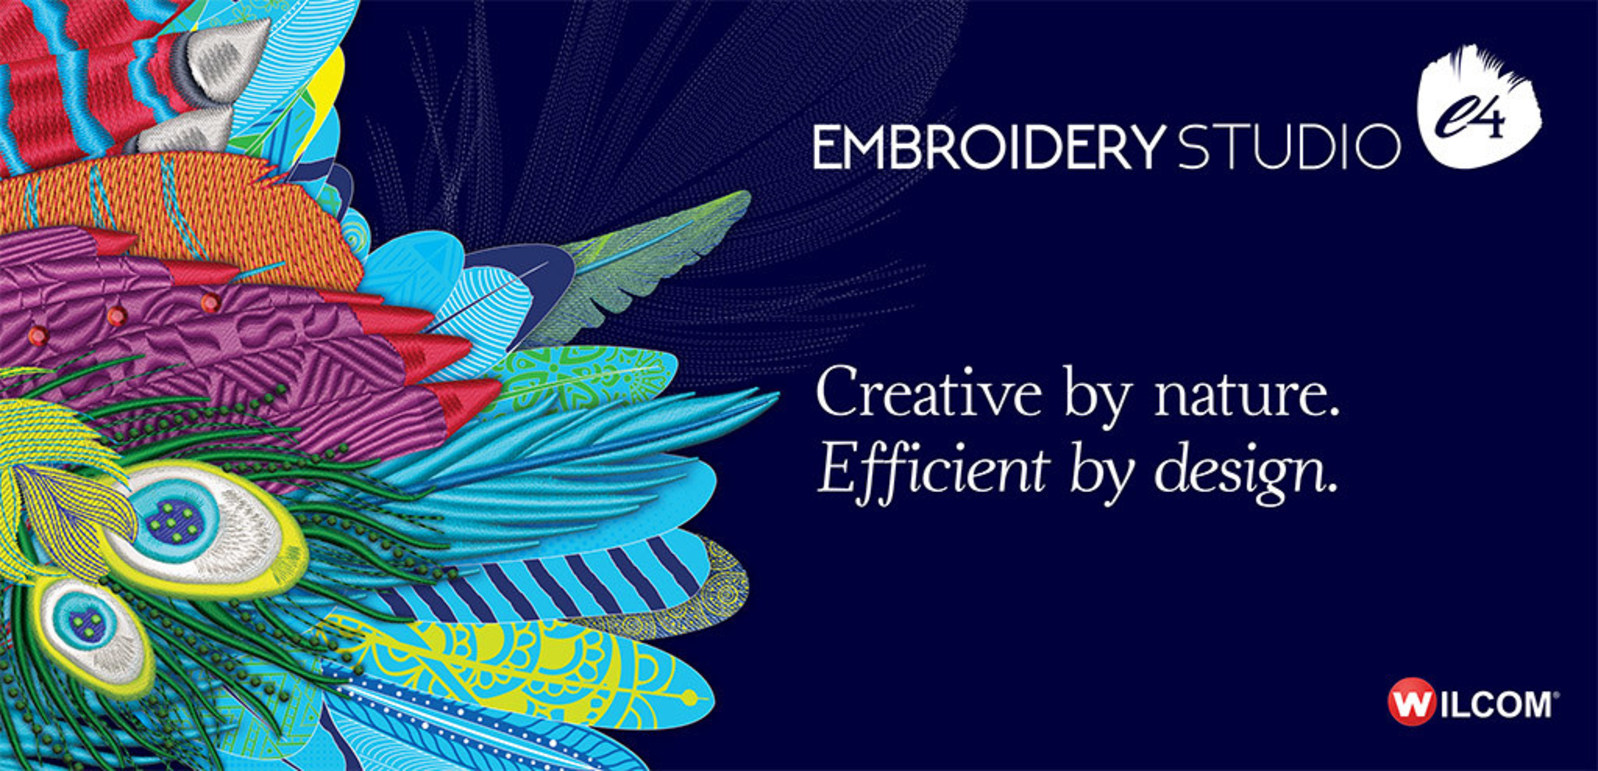 Compra con Grupo Deco al mejor precio la licencia completa de Embroidery Studio Designing e4 para toda Colombia - Colombia